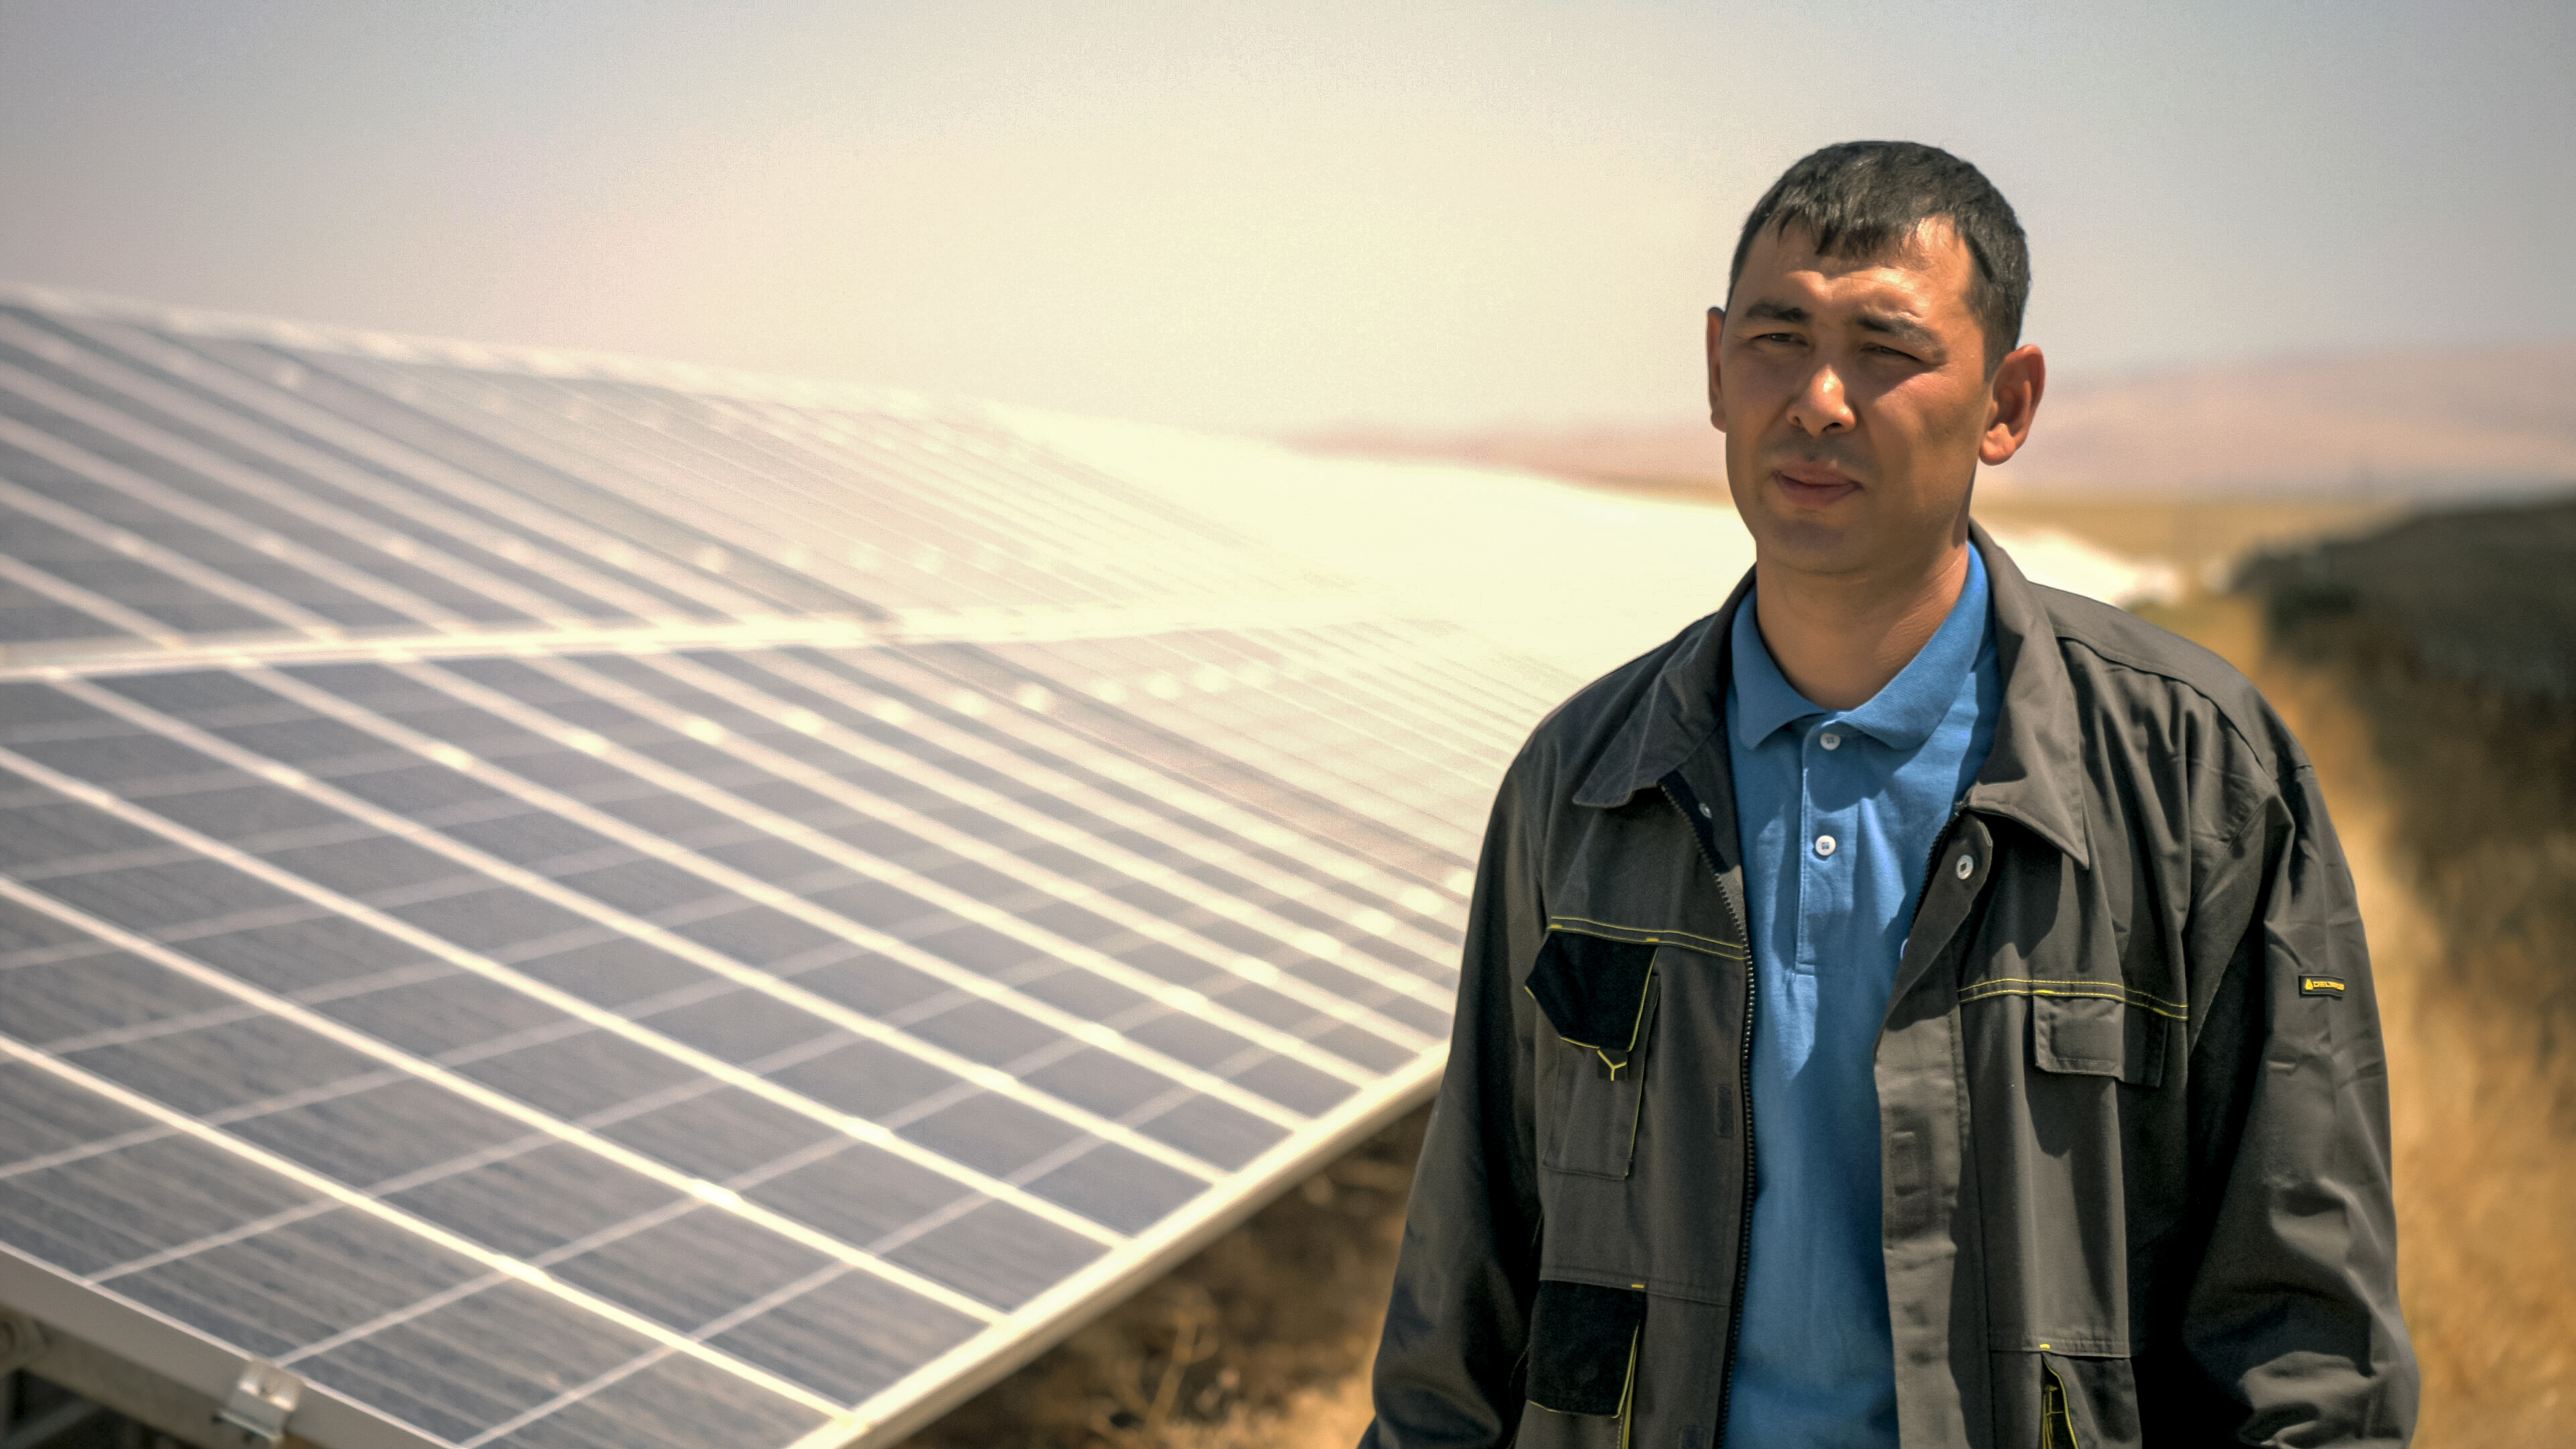 بعد ترك مسيرته المهنية الطويلة في قطاع الوقود الأحفوري، يفخر فني الطاقة الشمسية رسلان ماميتوف بالعمل في بيرنوي سولار (Burnoye Solar)، وهي أول وأكبر منشأة للطاقة الشمسية في كازاخستان.